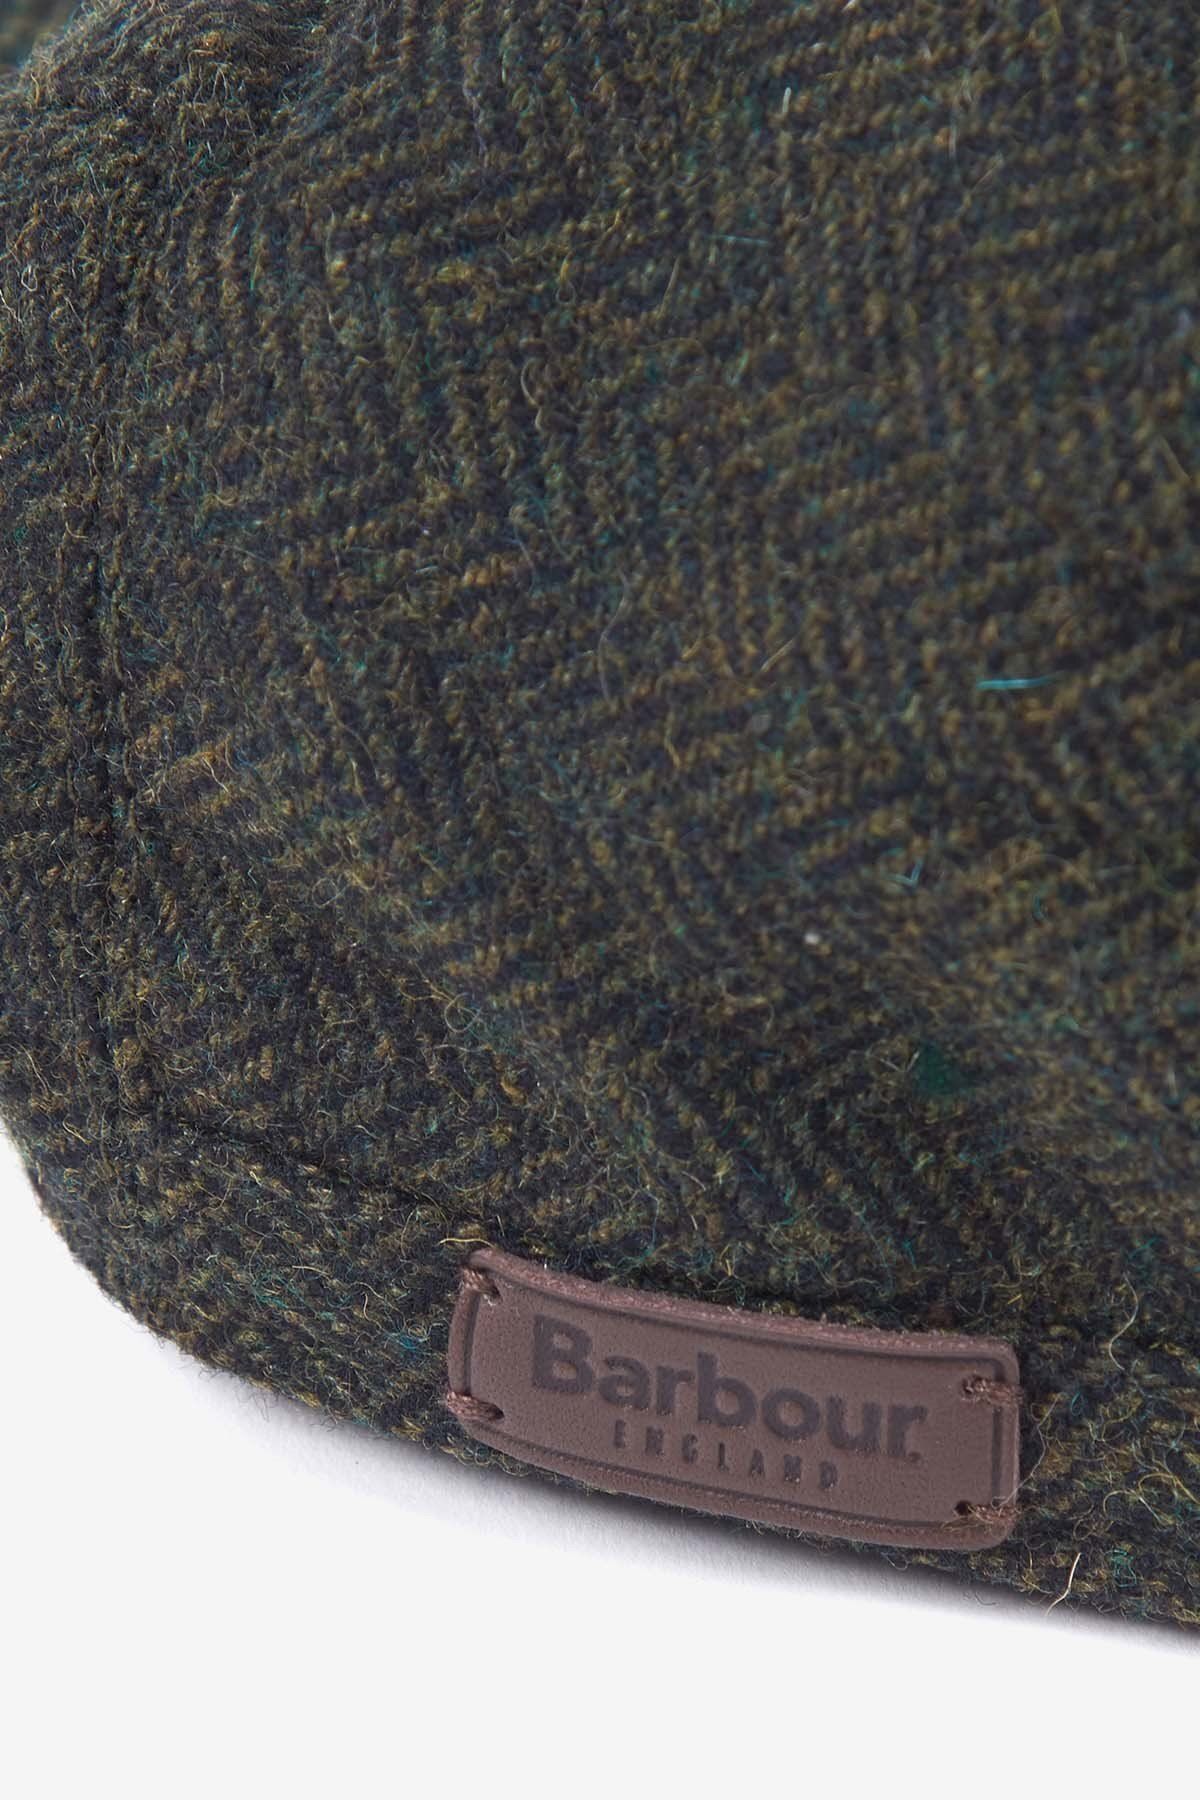 Barbour یک زیتون Barlow Hat11 باشید